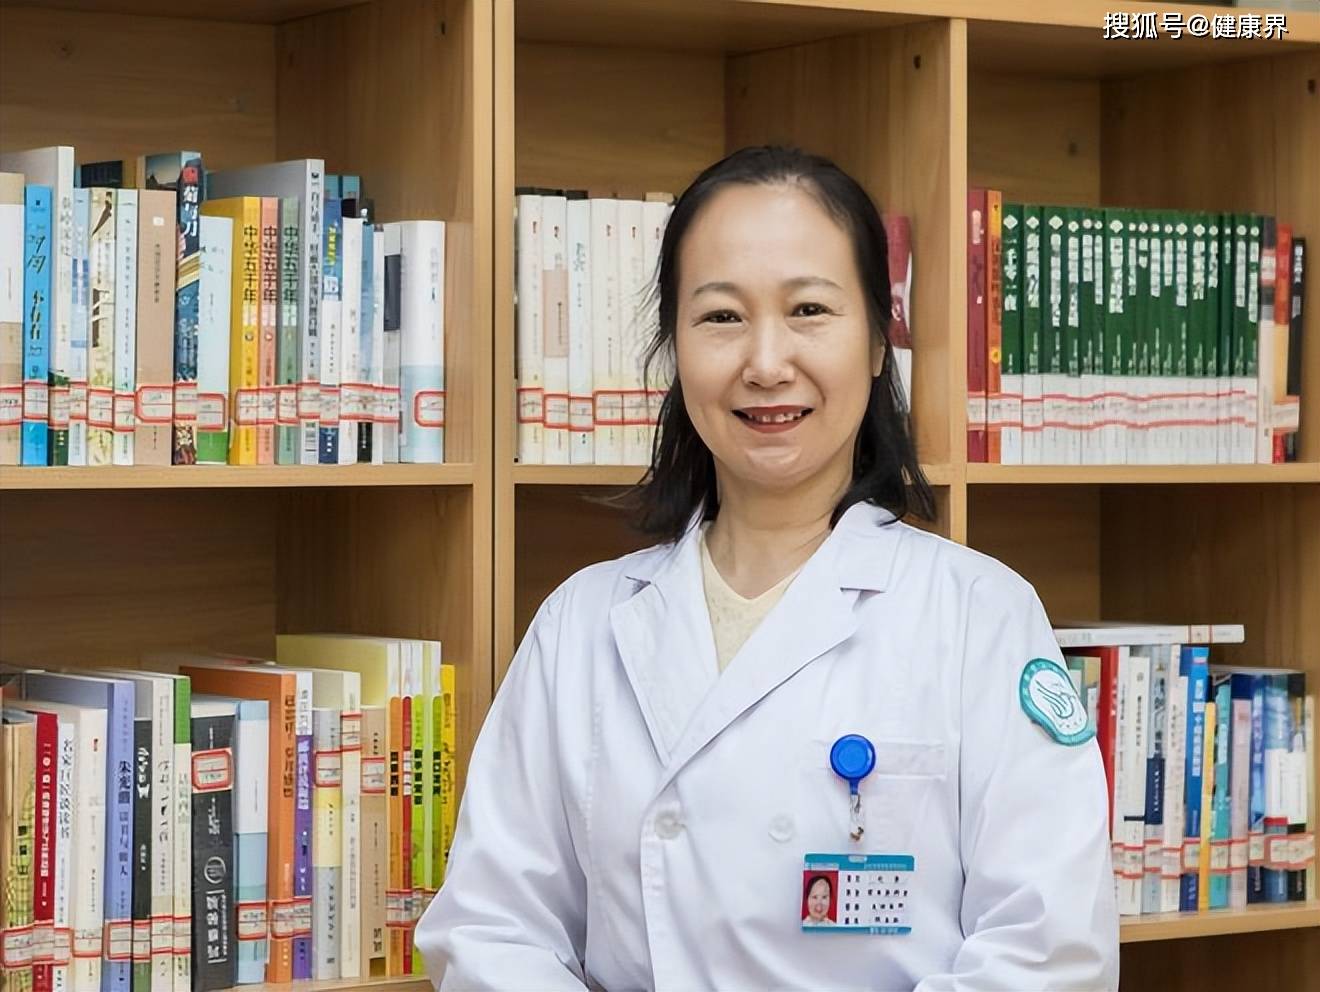 山西省人民医院图书馆馆长刘芳：要做医生学术上的启发者和支持者